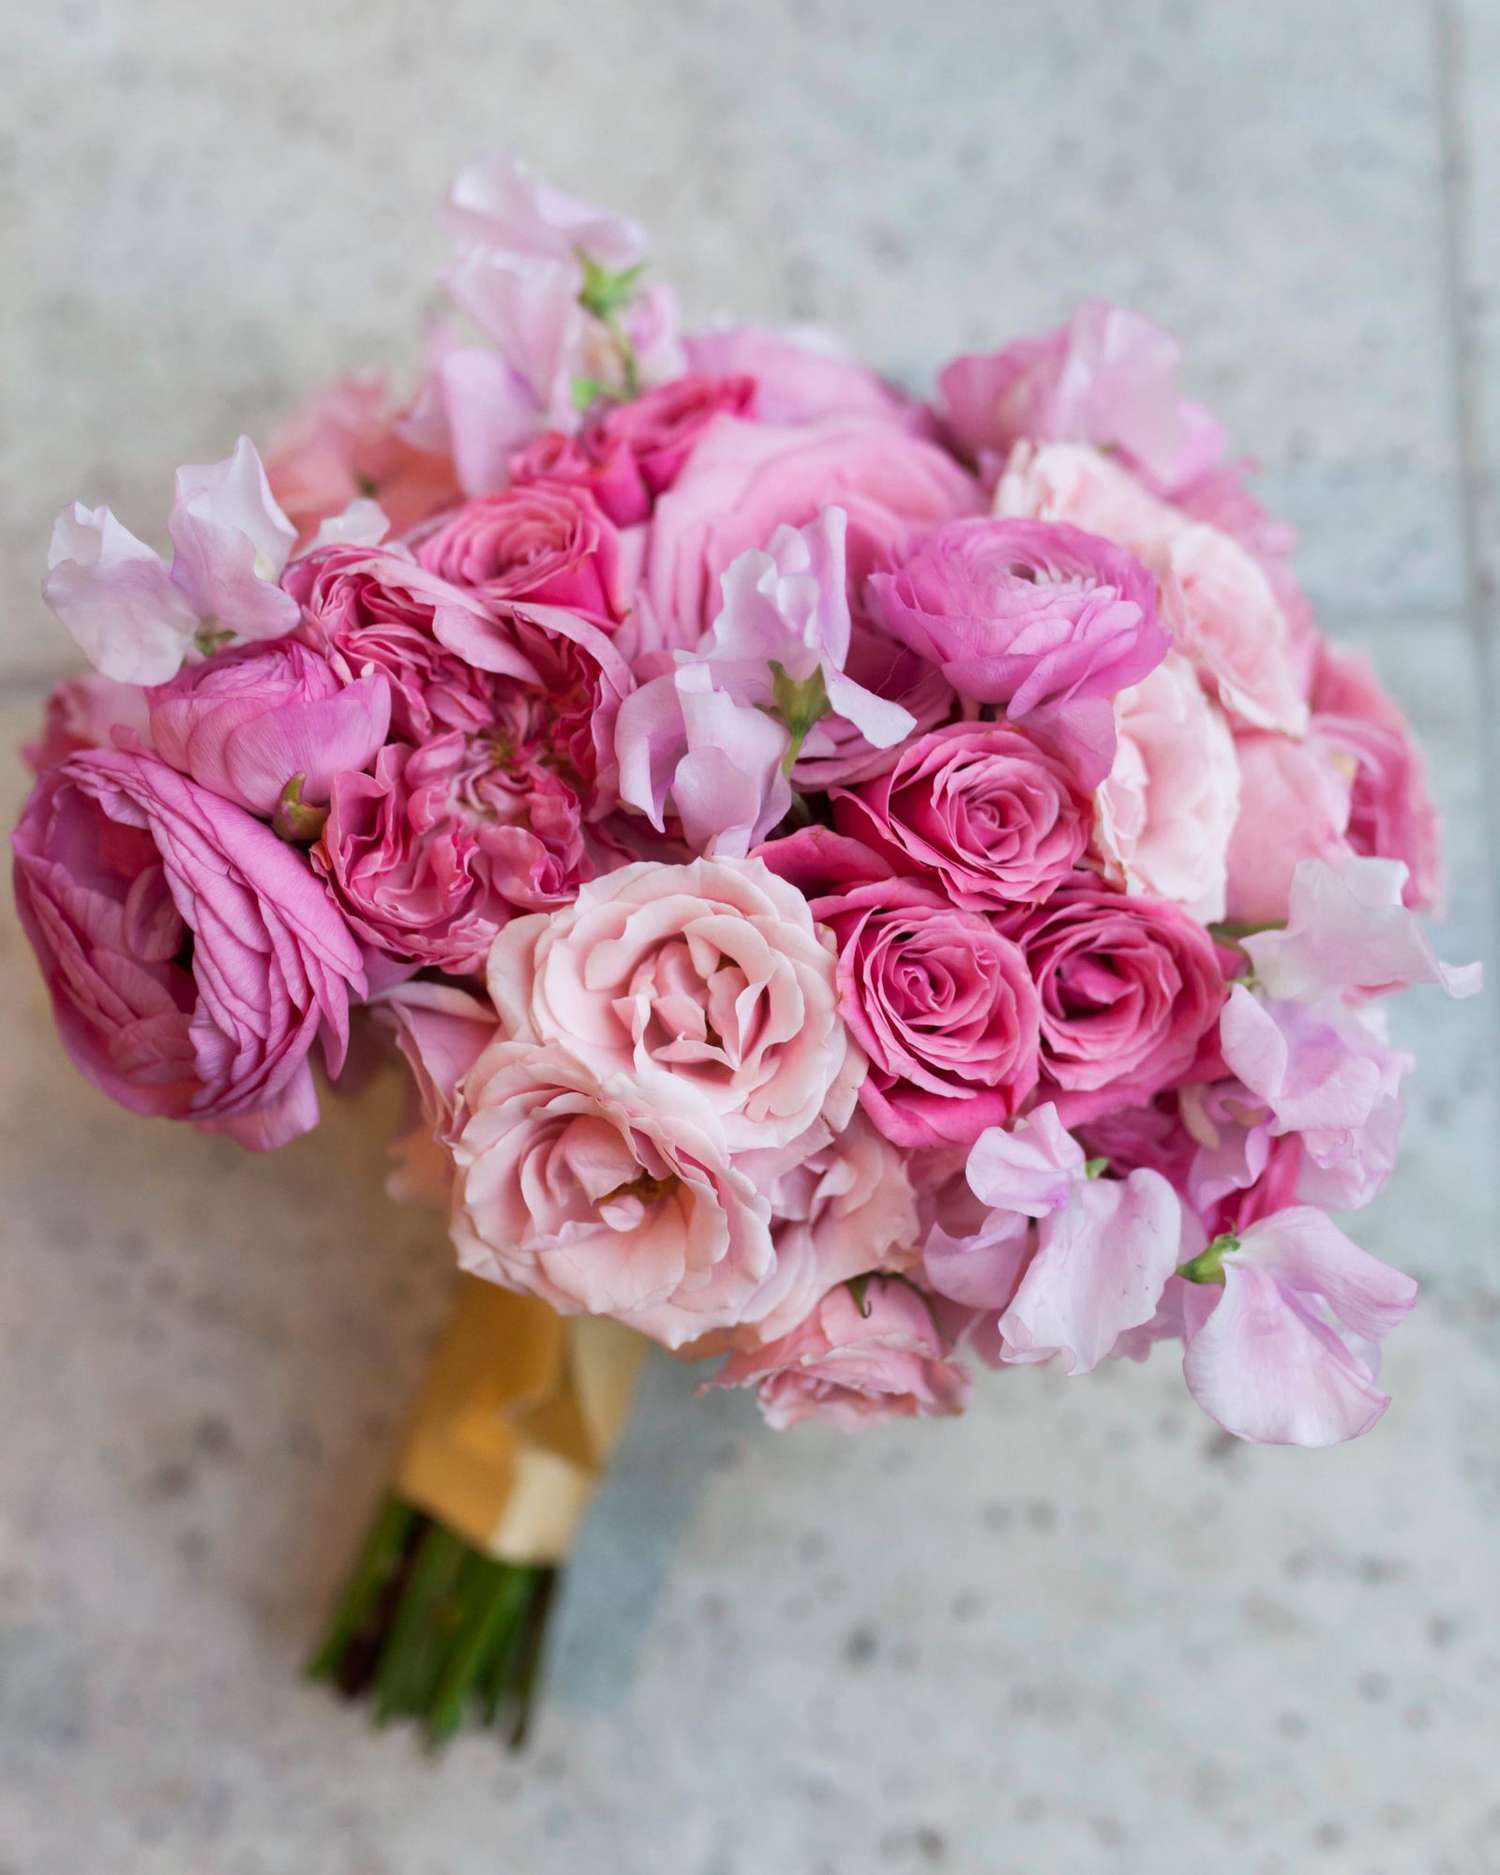 ashley-ryan-wedding-bouquet-132-s111852-0415.jpg